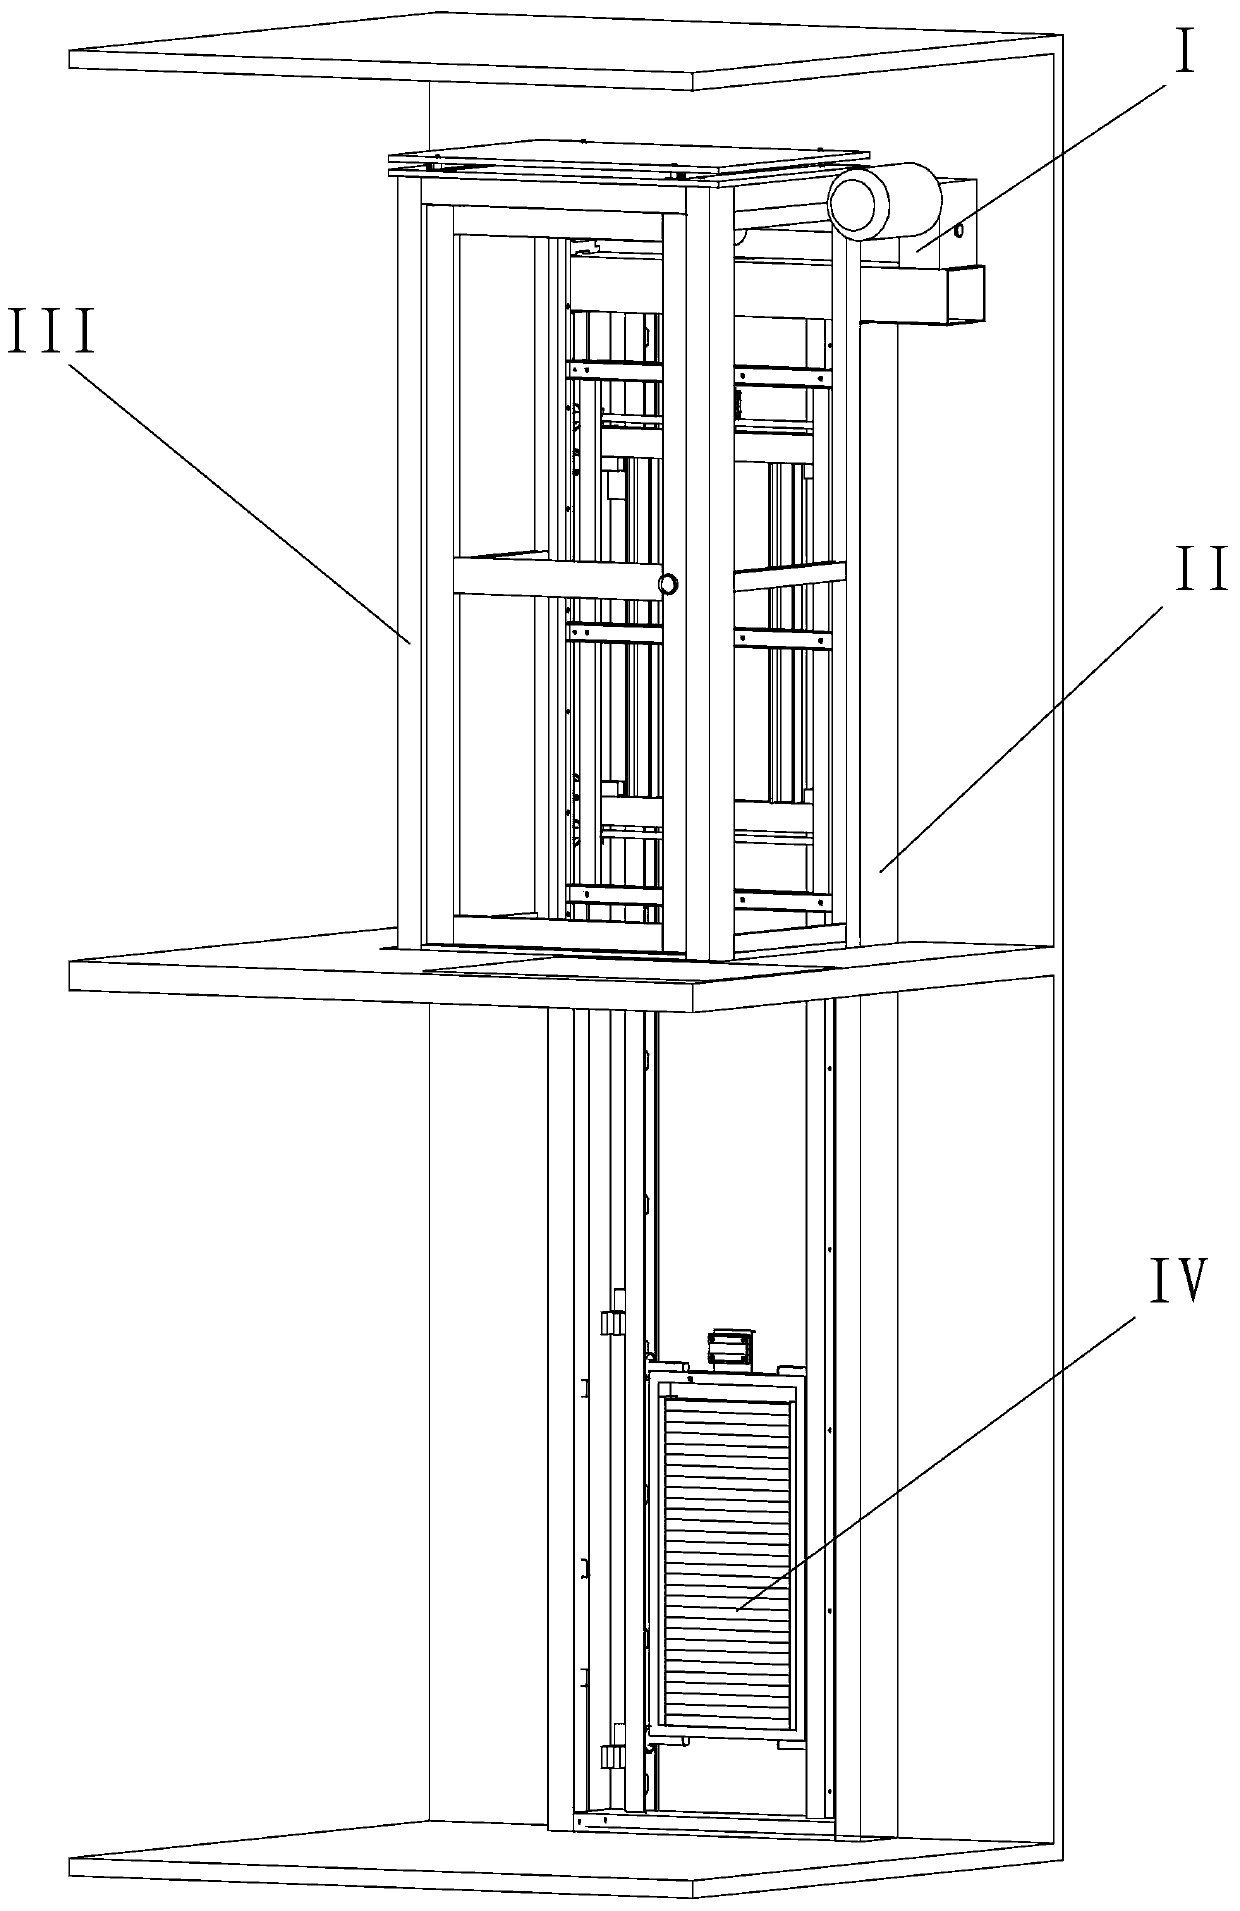 Wall-mounted type elevator